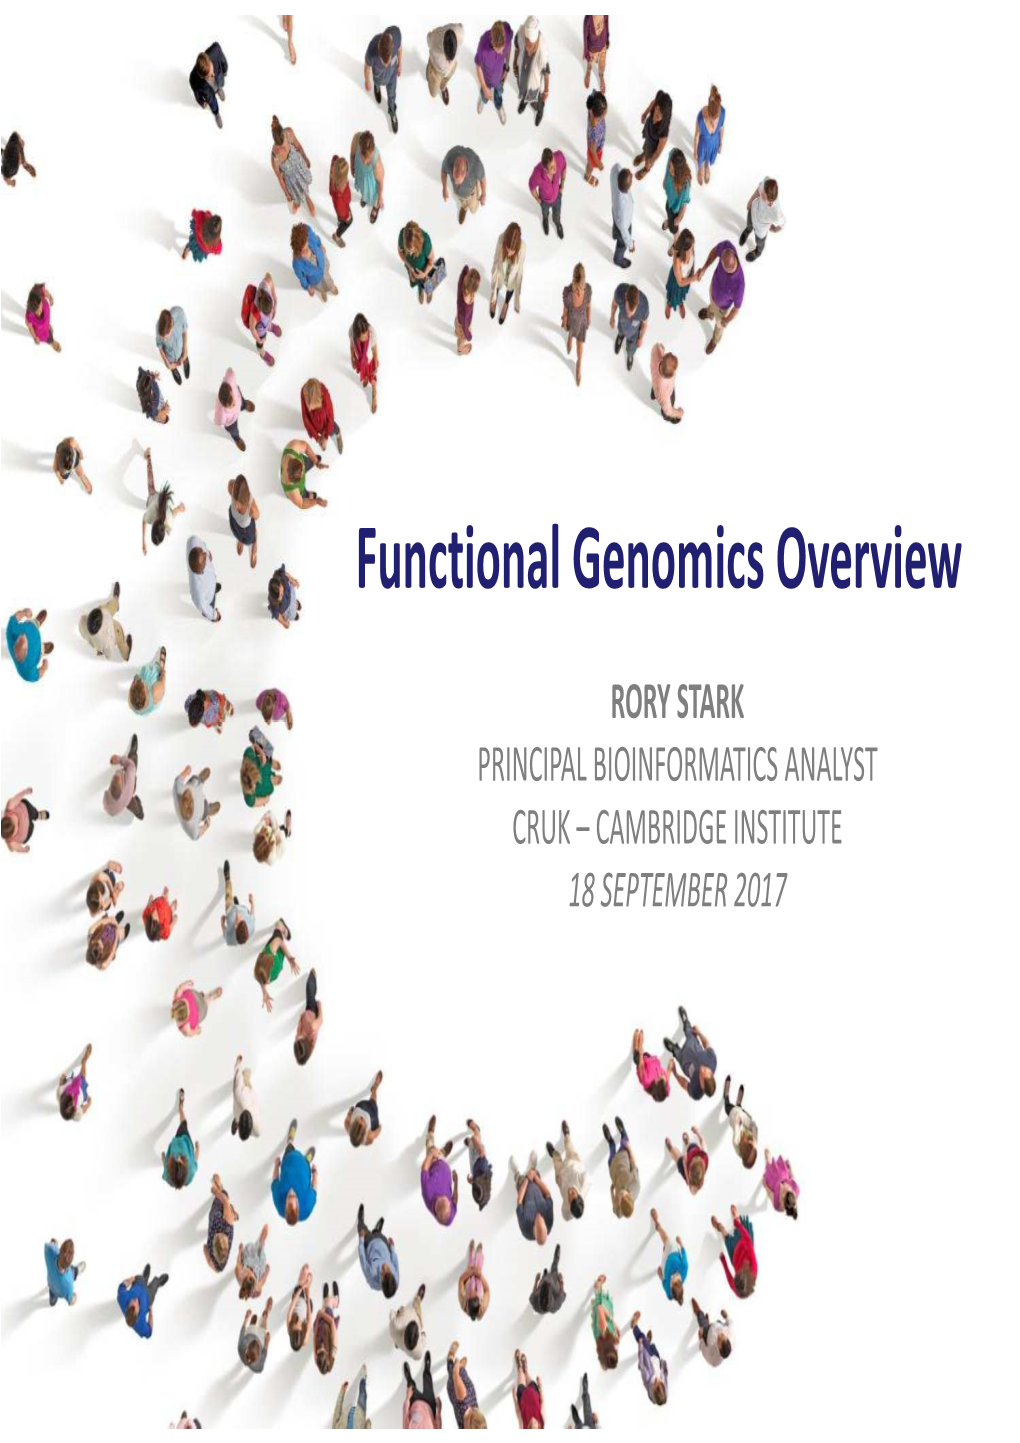 Functional Genomics Overview